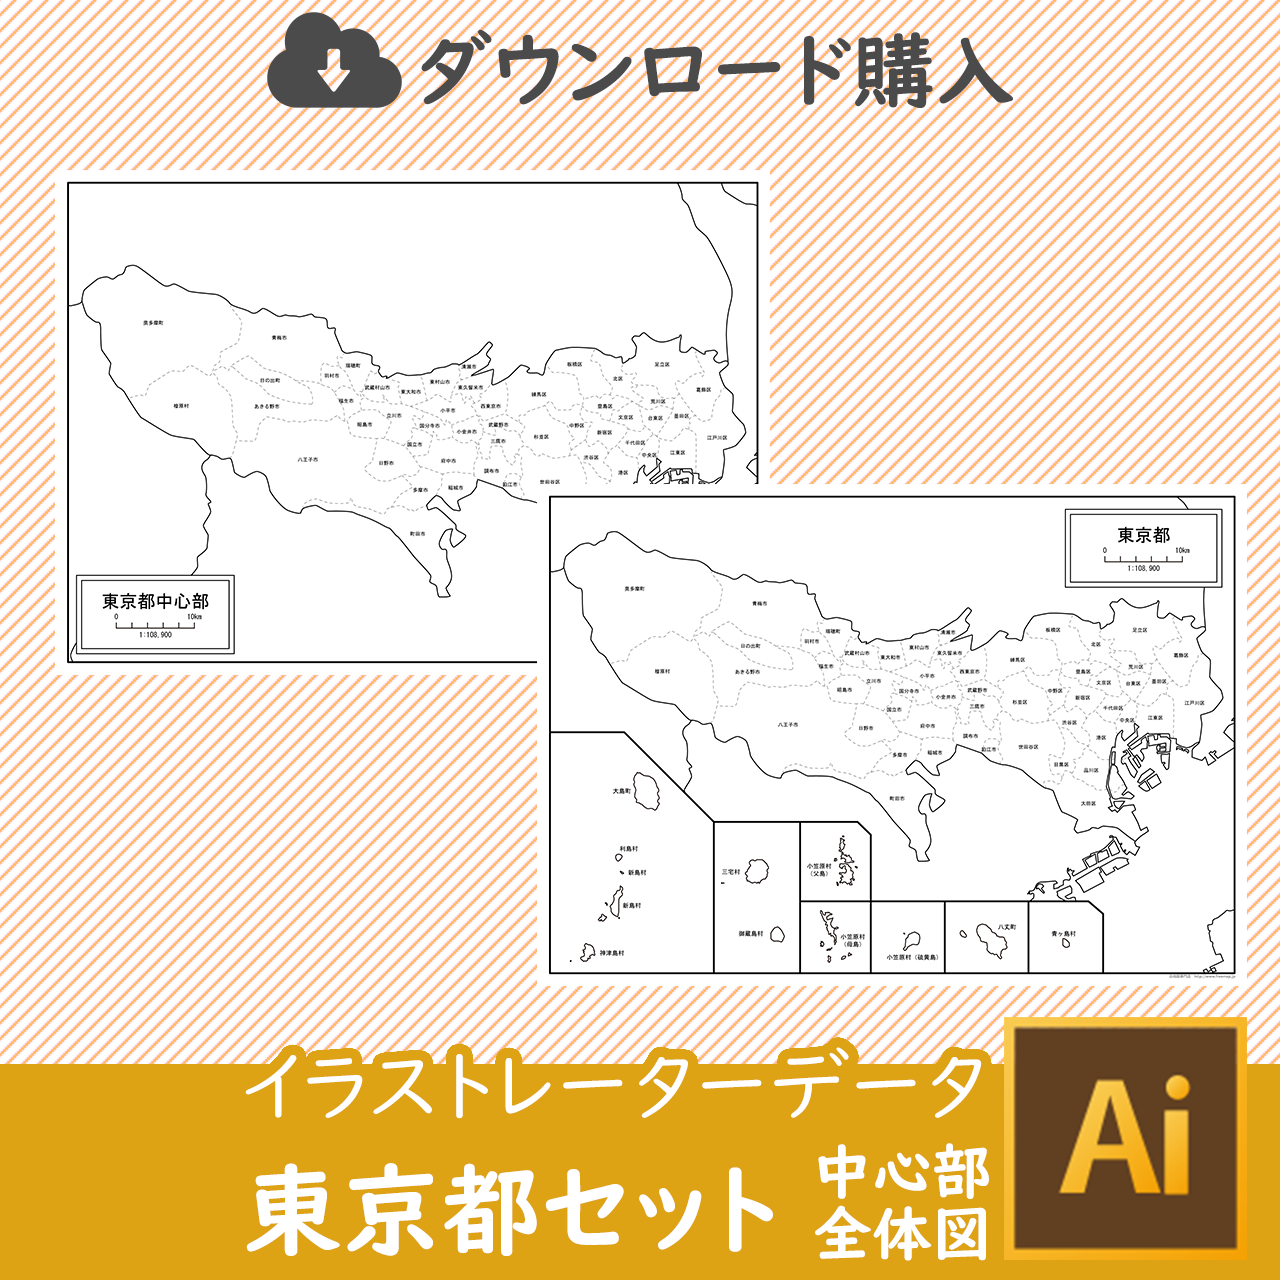 東京都全体の白地図のサムネイル